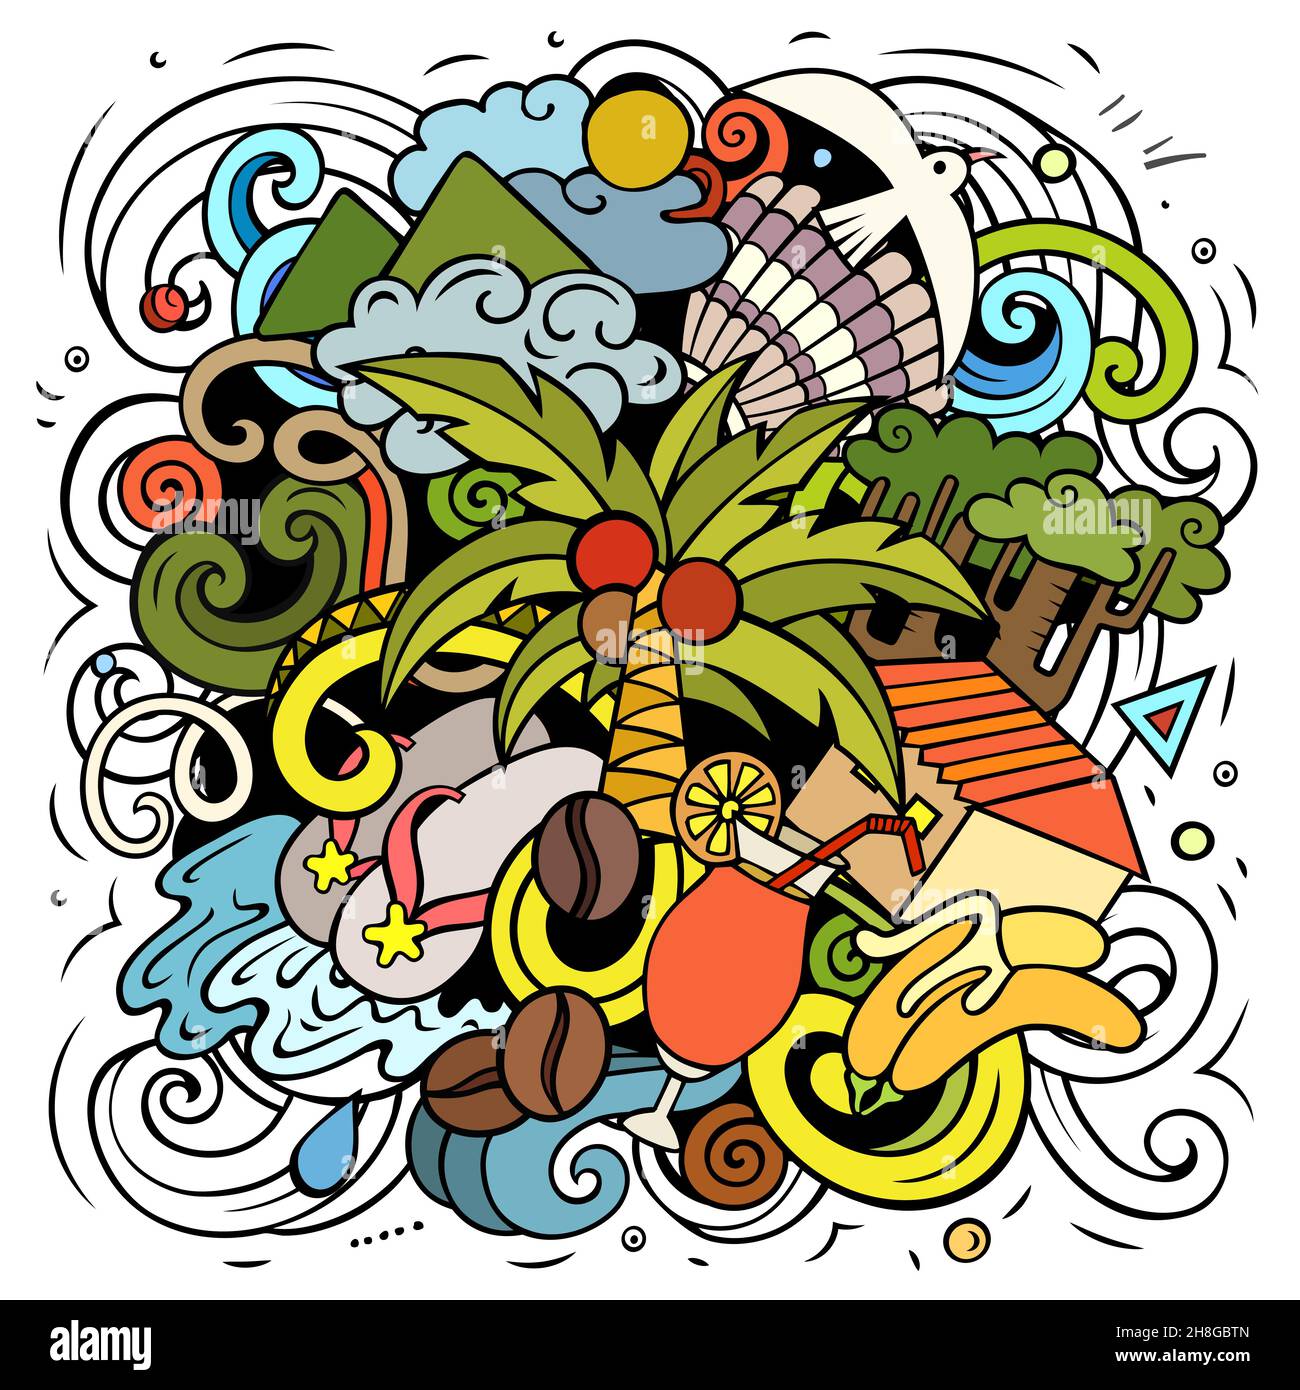 Illustration d'un vecteur de dessin animé en Haïti.Composition colorée et détaillée avec beaucoup d'objets et de symboles exotiques des îles. Illustration de Vecteur